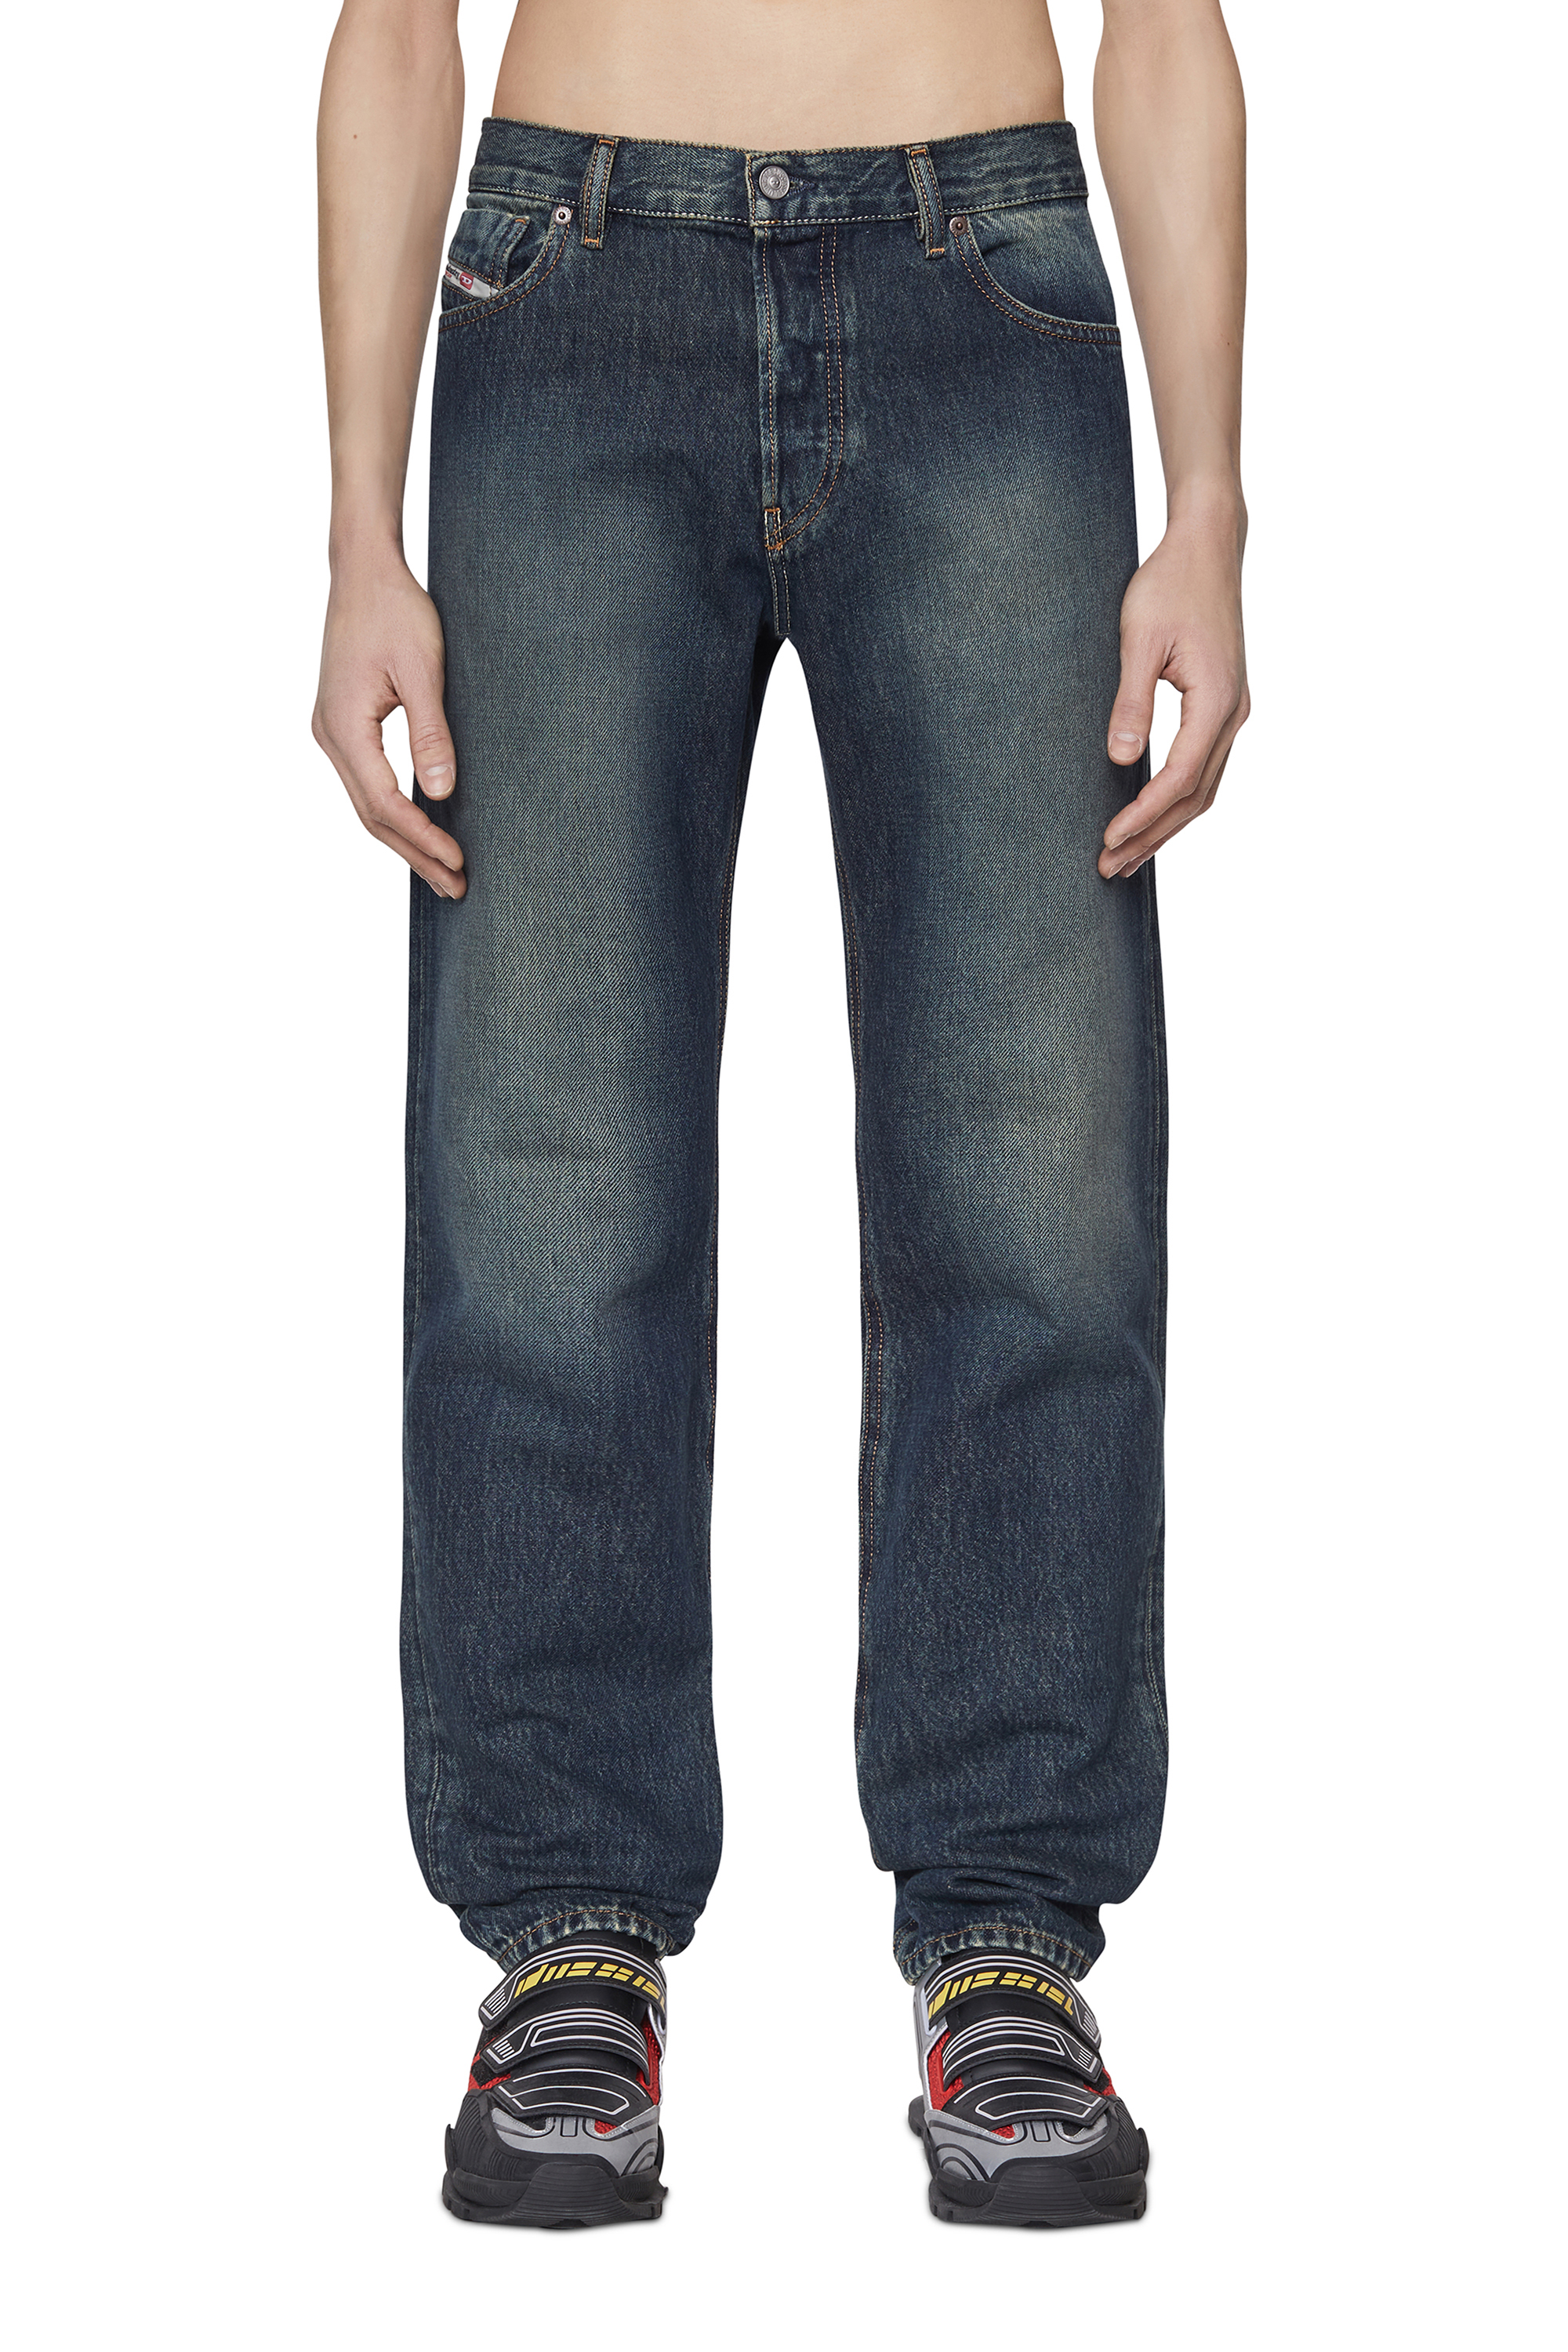 2010 D-Macs 09C04 Straight Jeans, Dark Blue